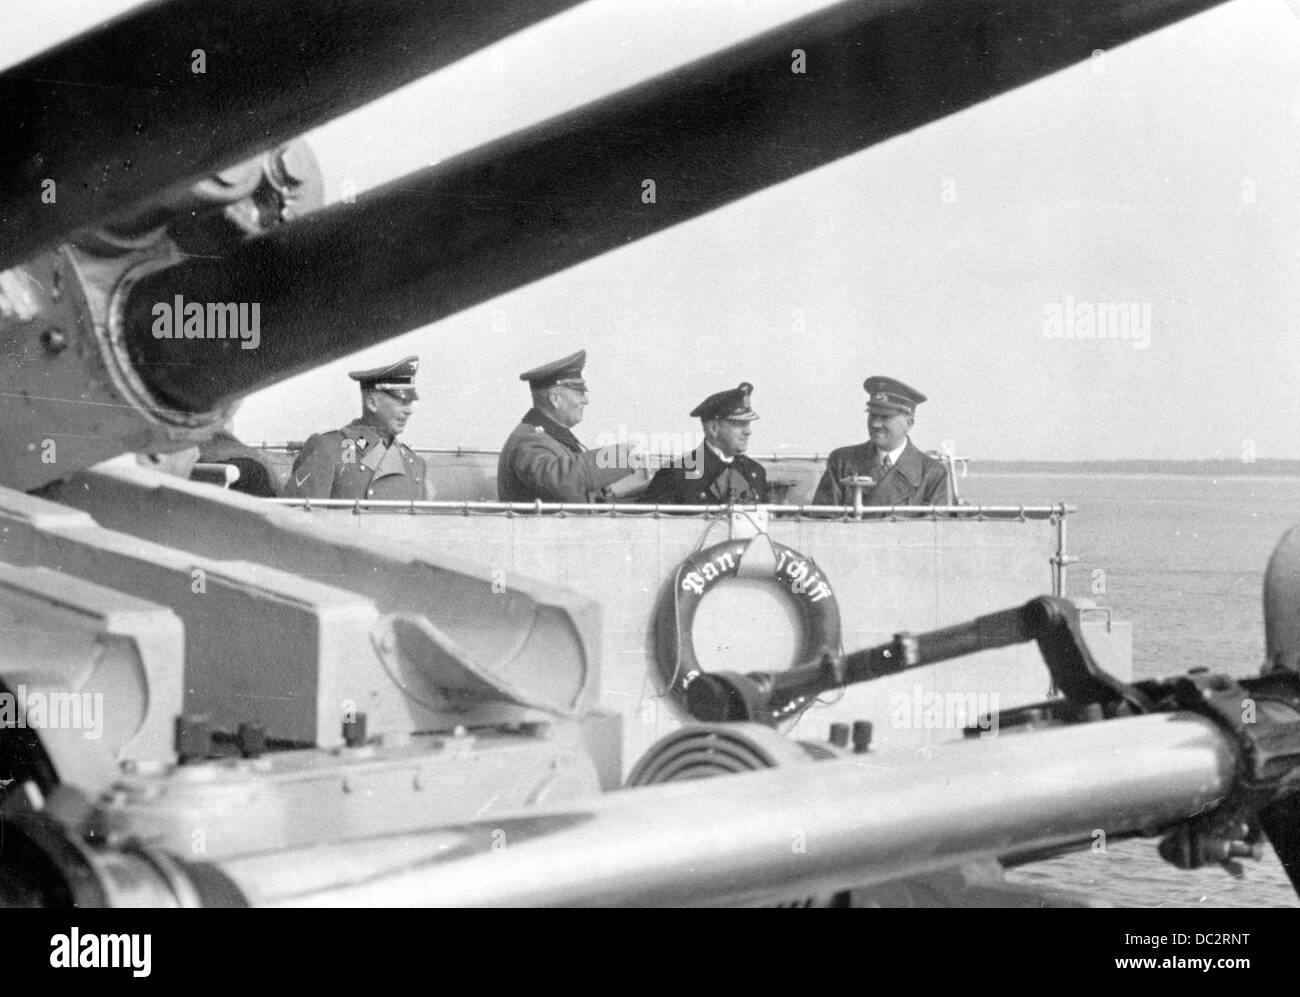 Le chancelier de Reich Adolf Hitler est photographié sur le cuirassé 'Deutschland', publié le 23 mars 1939. La propagande nazie! Au dos de l'image se lit: 'Le voyage de Führer au Memelland sur le cuirassé 'Deutschland'. Le Führer sur le pont du cuirassé 'Deutschland' accompagné de l'amiral Dr. H.c. Erich Raeder (2-r), le général Wilhelm Keitel (3-r) et le ministre Reich, le Dr Hans Heinrich Lammers (l), en voyage le long de la côte de Memelland. Fotoarchiv für Zeitgeschichte Banque D'Images